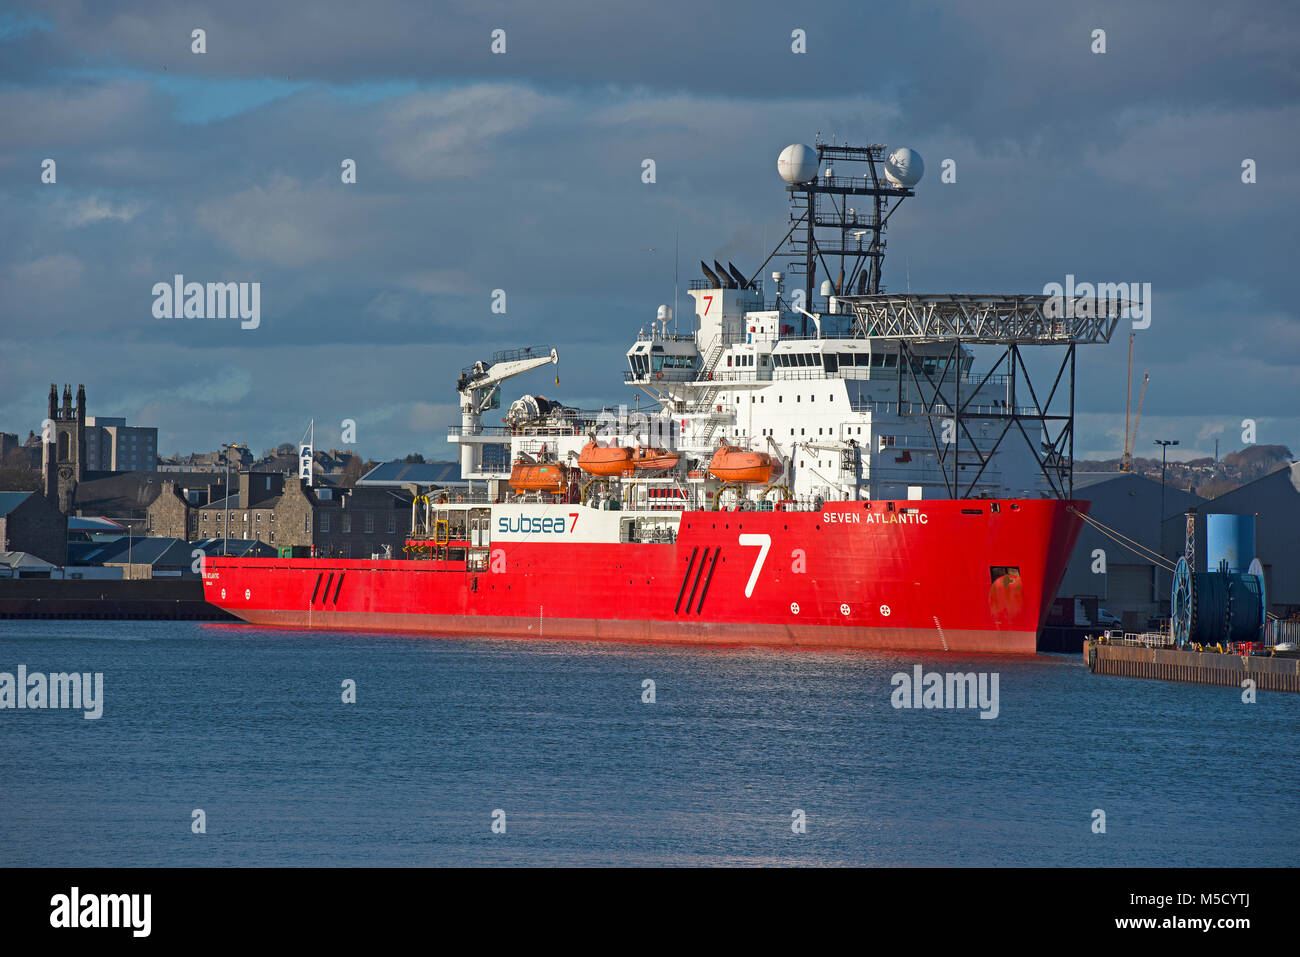 Der Tauchgang Unterstützung Schiff in seinem Heimathafen in Aberdeen Hafen, Grampian. Schottland. Stockfoto